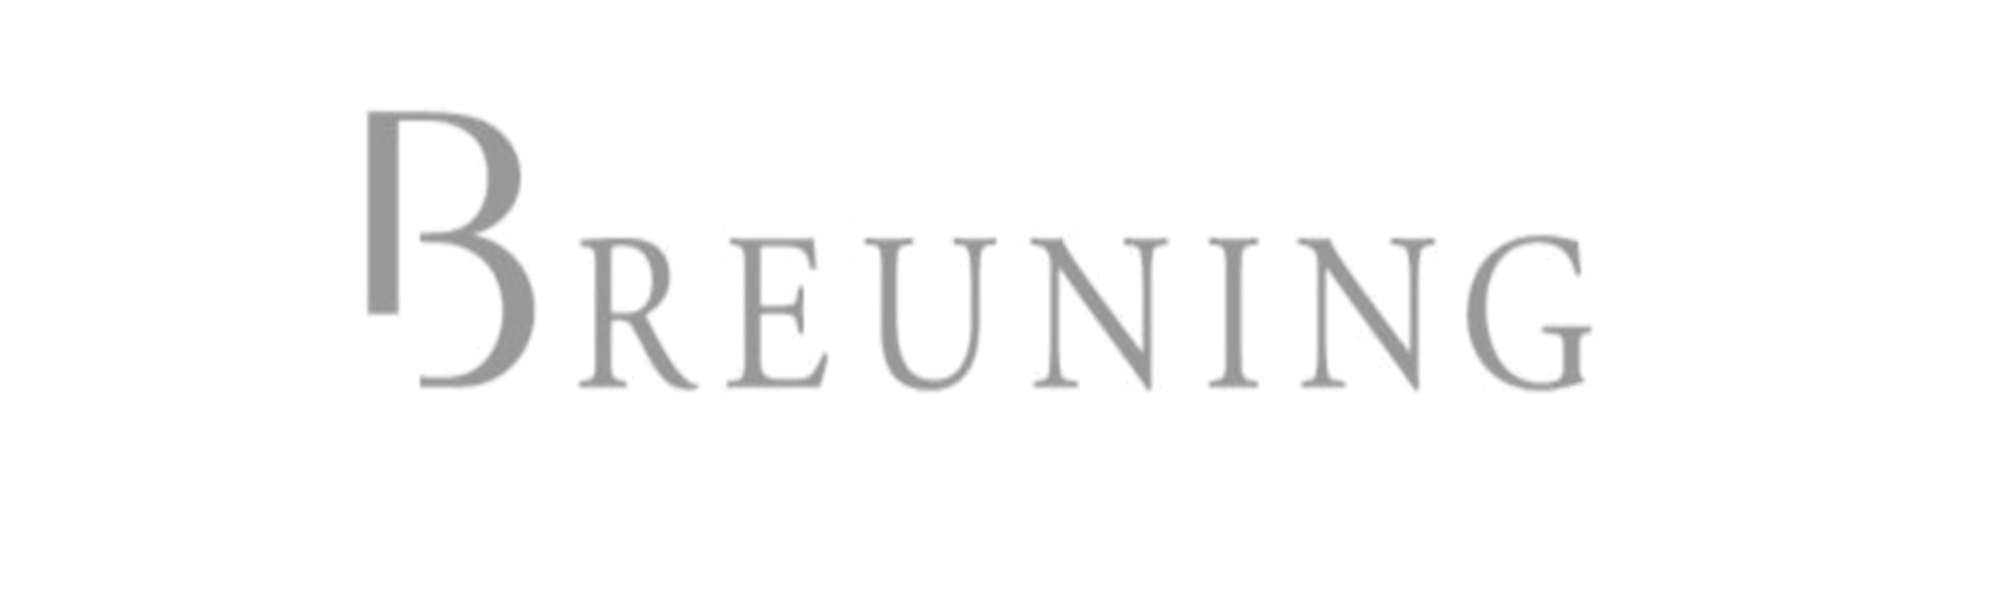 Logo - Breuning